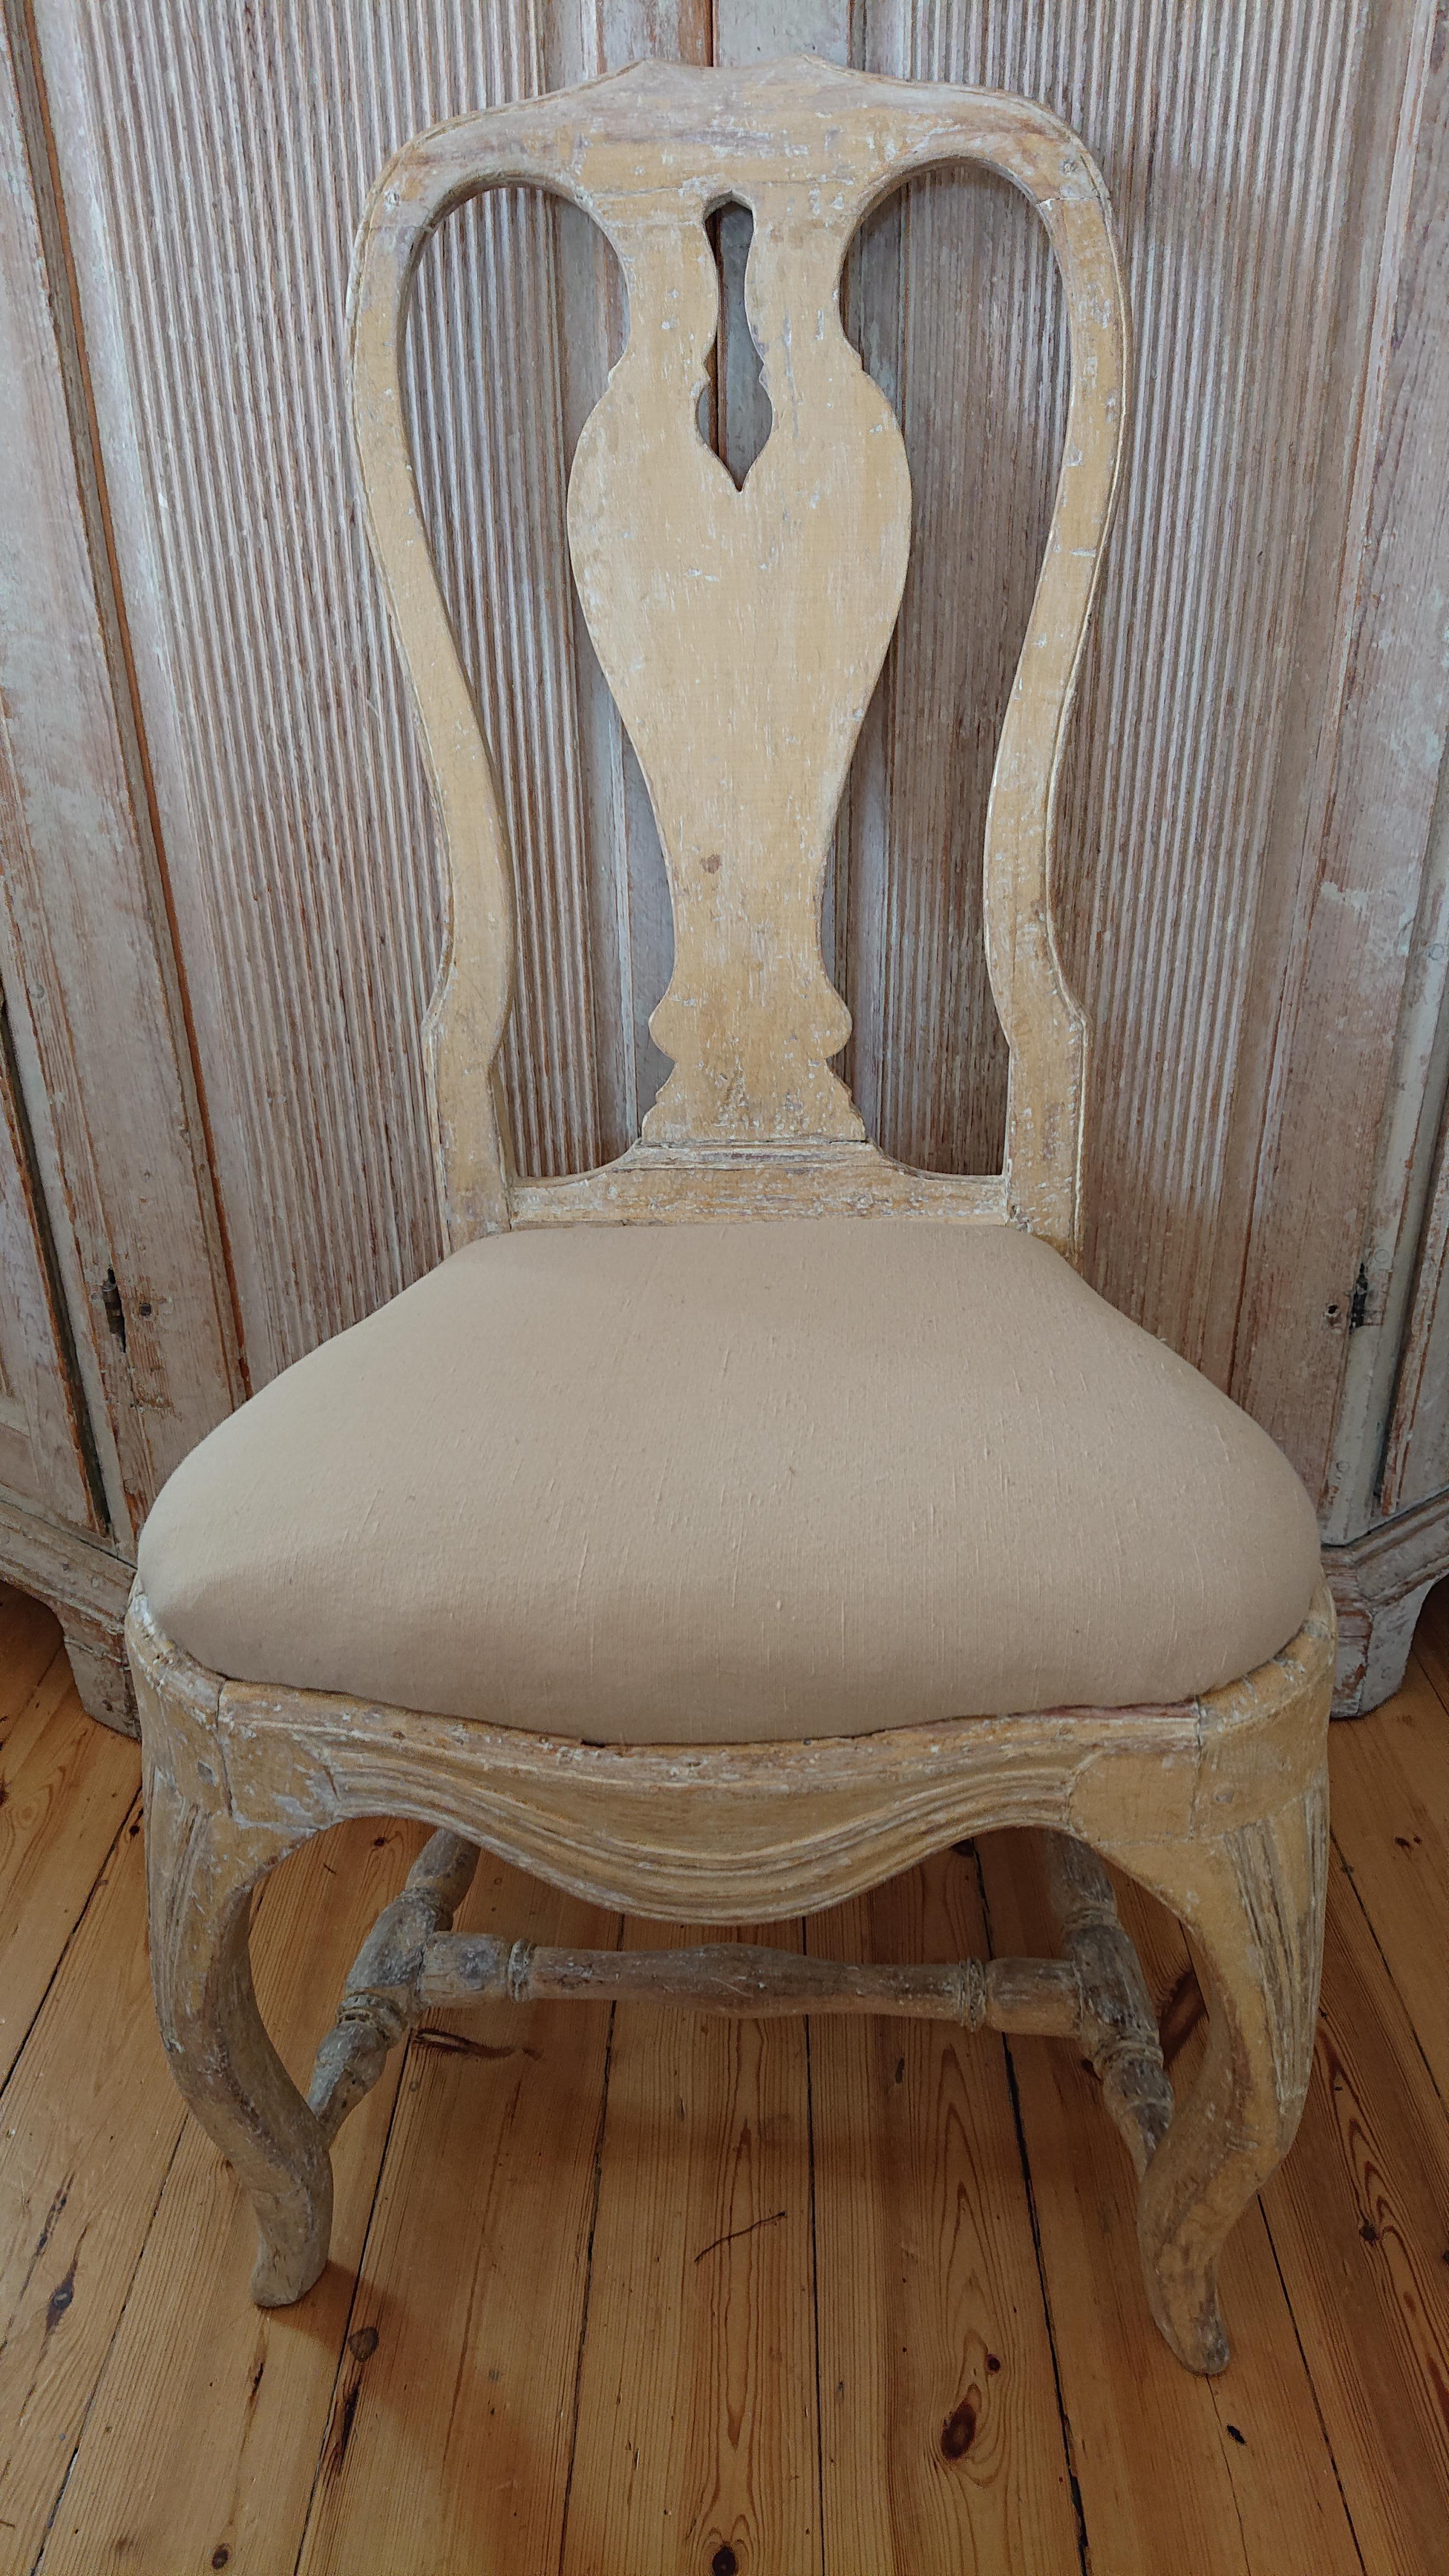 chaise rococo suédoise du 18e siècle provenant de Stockholm, 
Le sud de la Suède.
Une chaise fantastique avec de belles proportions et des pieds incurvés 
Il vient de l'environnement de la classe supérieure.
Grattée à la main pour retrouver sa